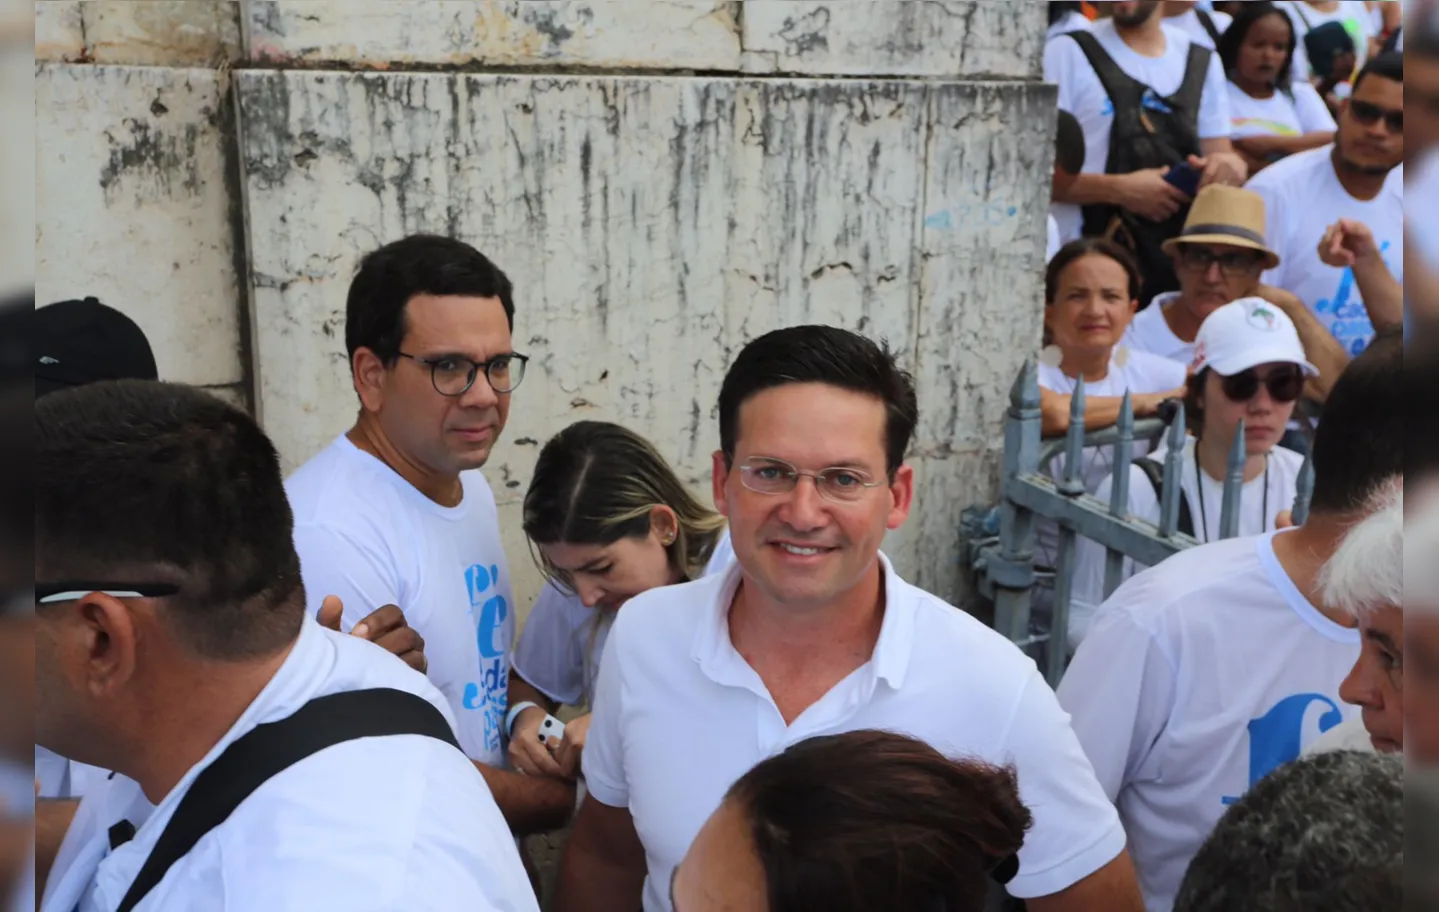 Roma reforçou a vinda do ex-presidente Bolsonaro à Bahia para reforça o direcionamento das cidades do interior baiano